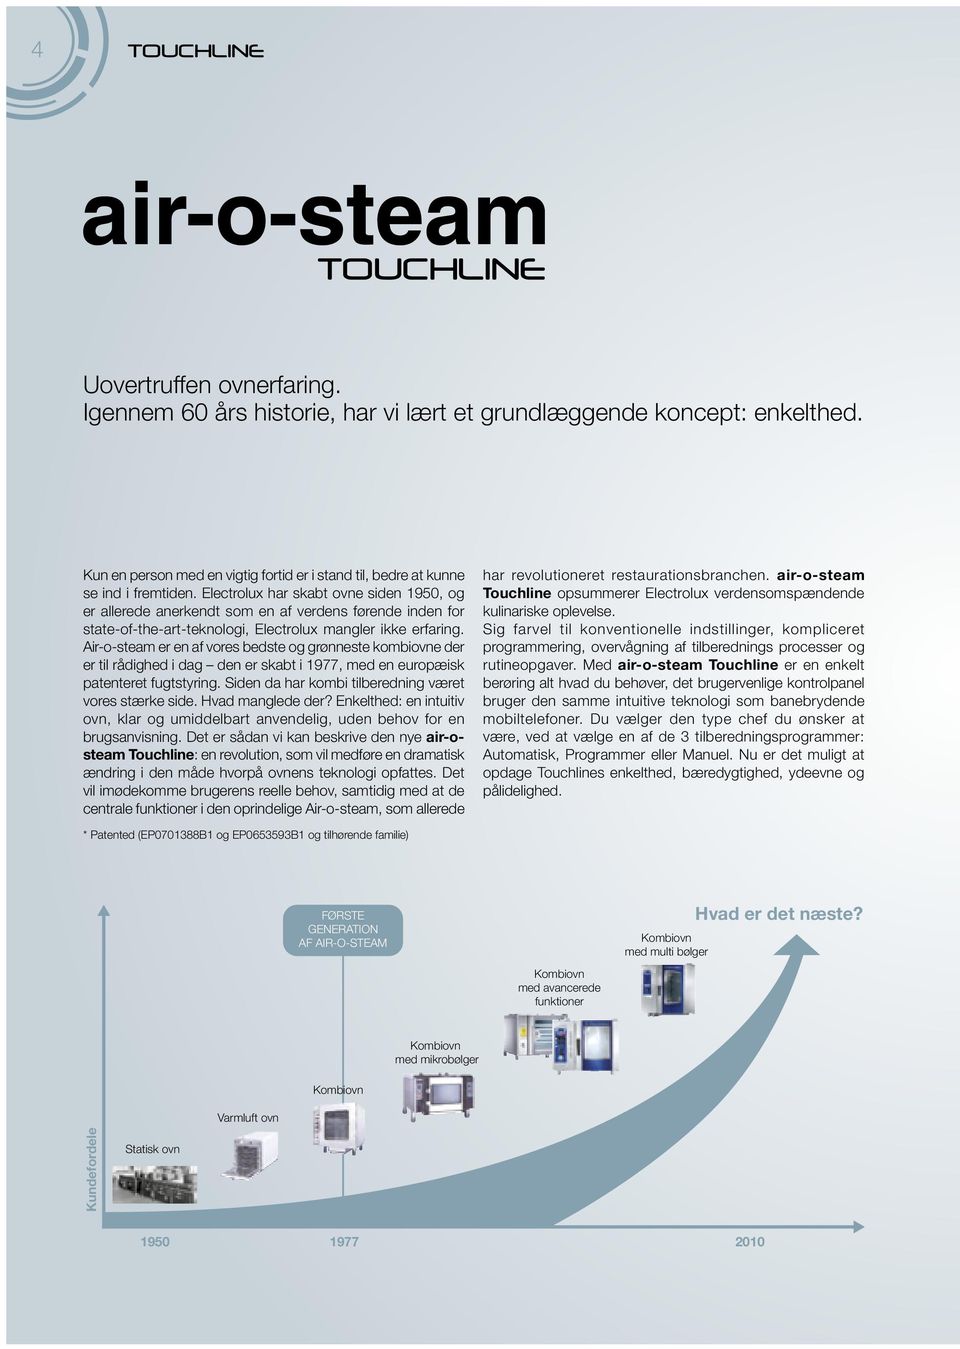 Air-o-steam er en af vores bedste og grønneste kombiovne der er til rådighed i dag den er skabt i 1977, med en europæisk patenteret fugtstyring.